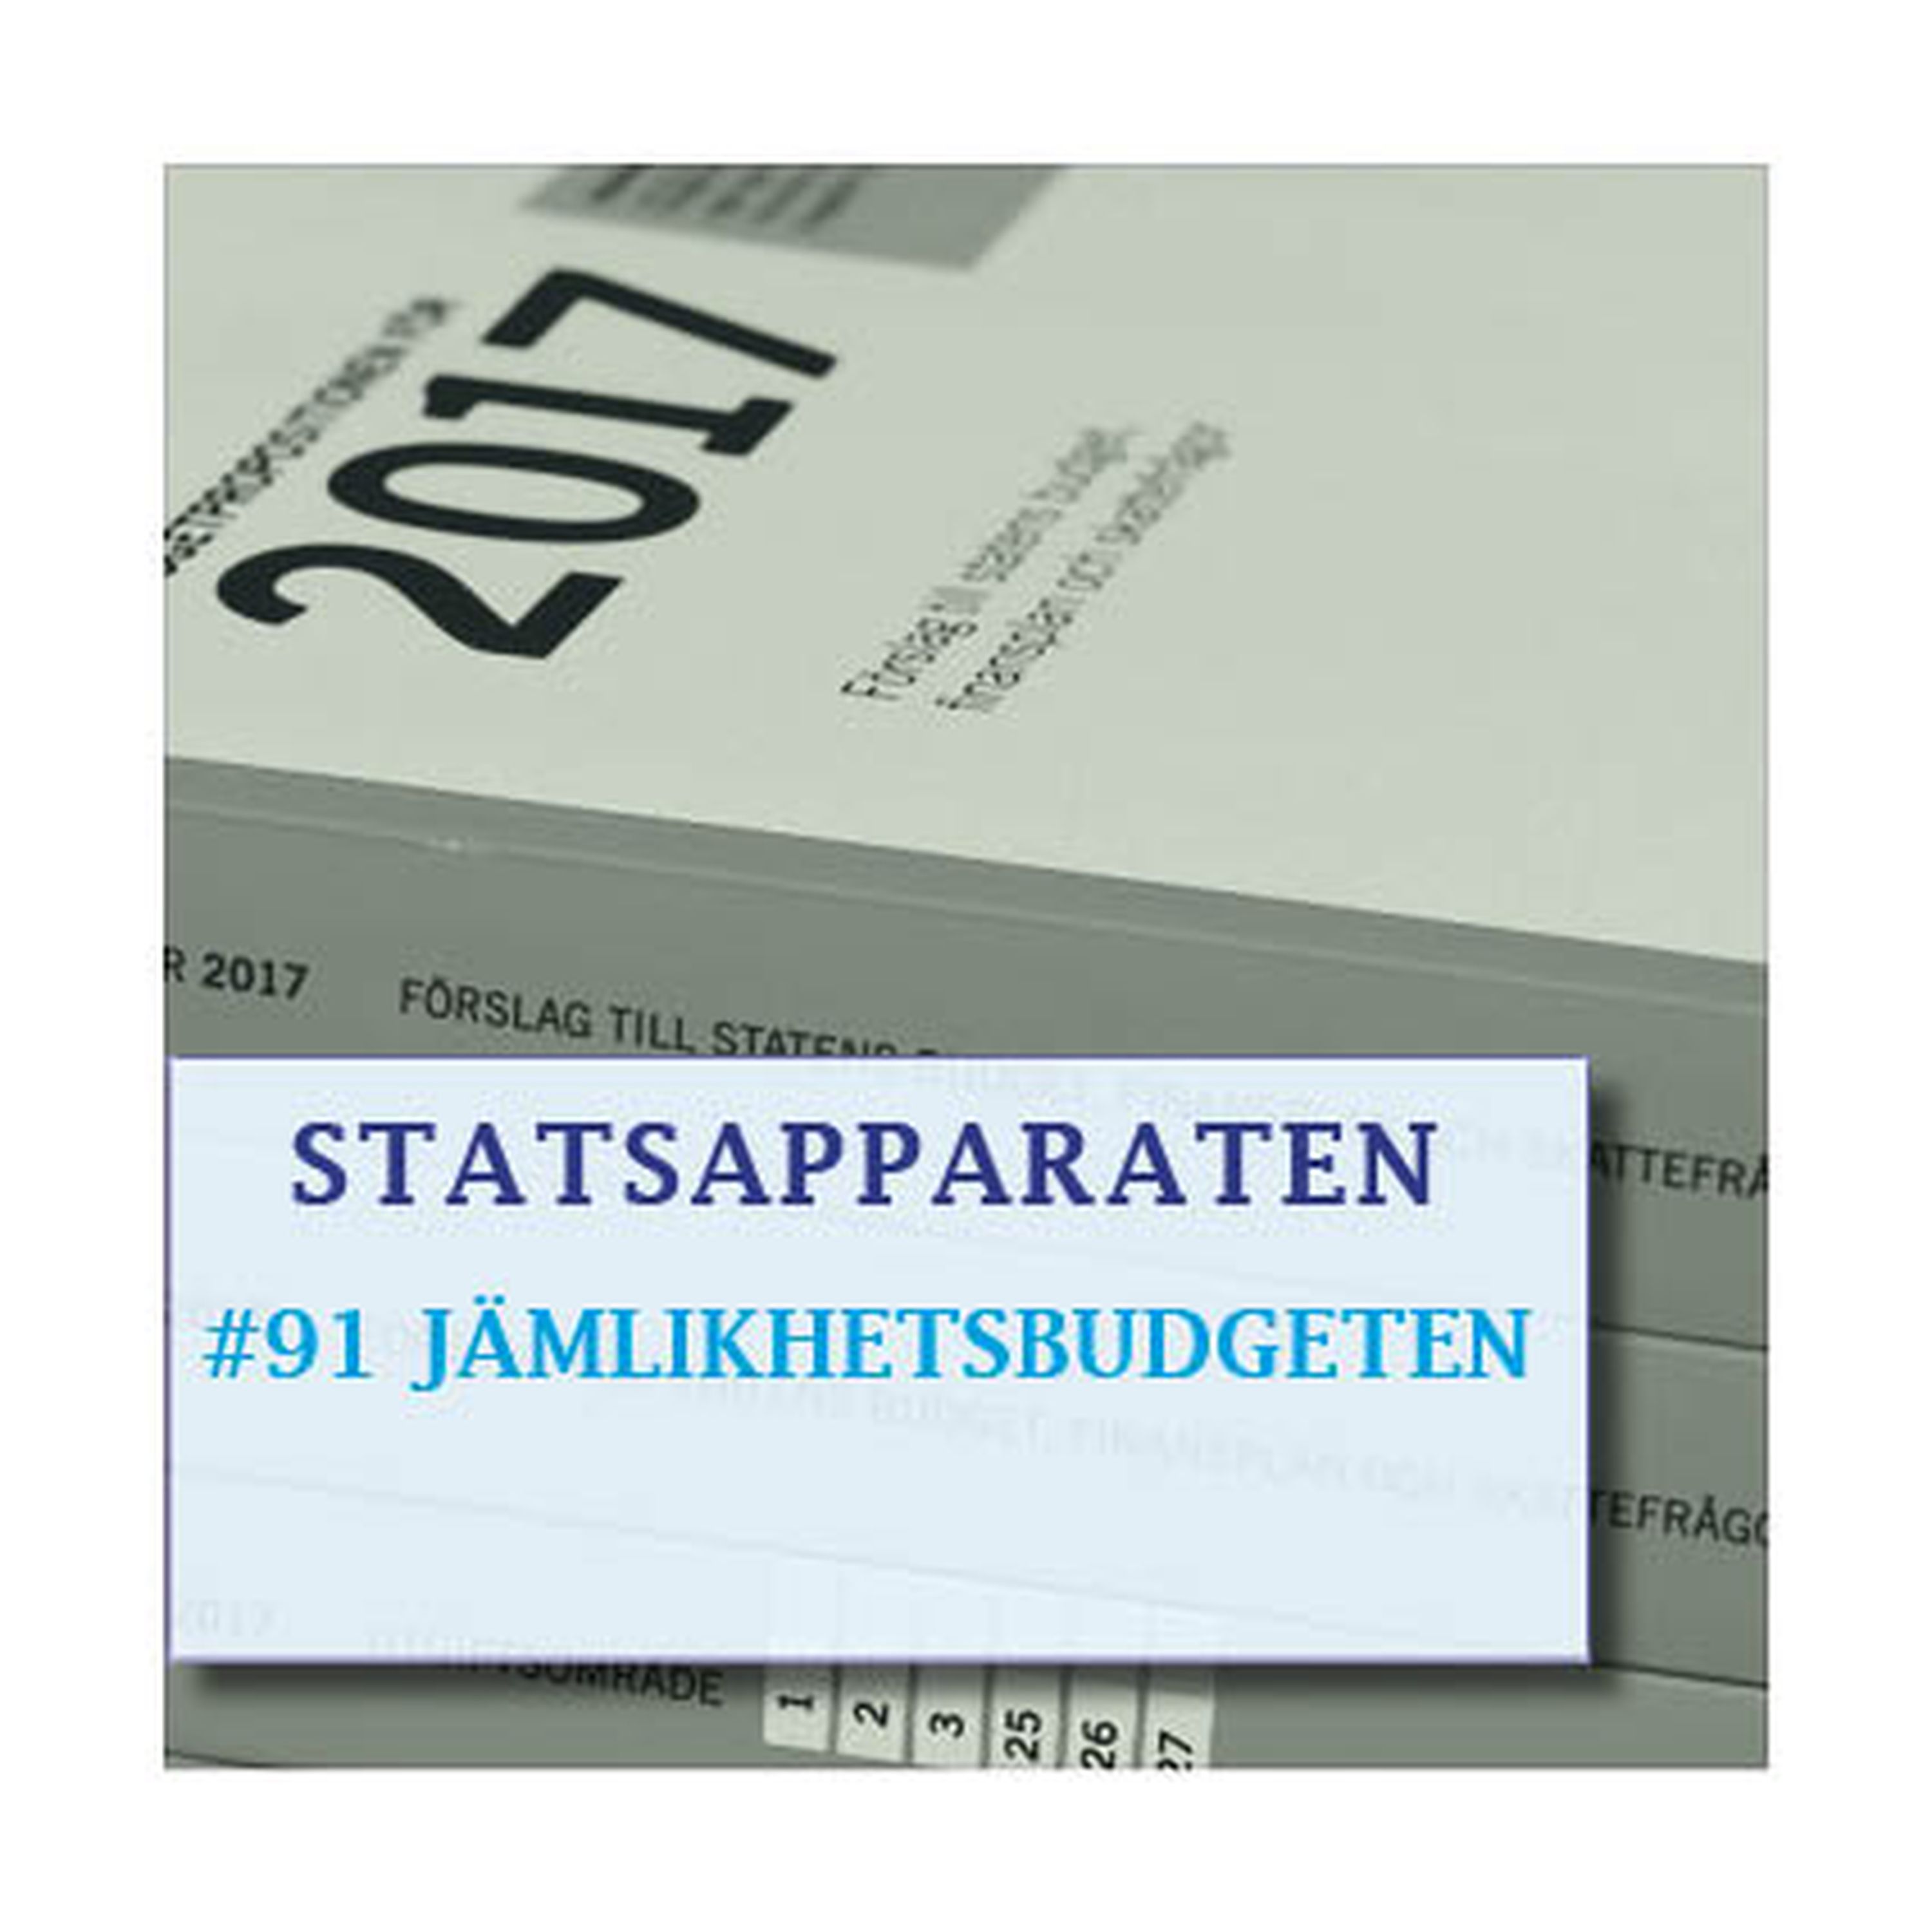 cover art for #91 Statsapparaten ♥ Jämlikhetsbudget